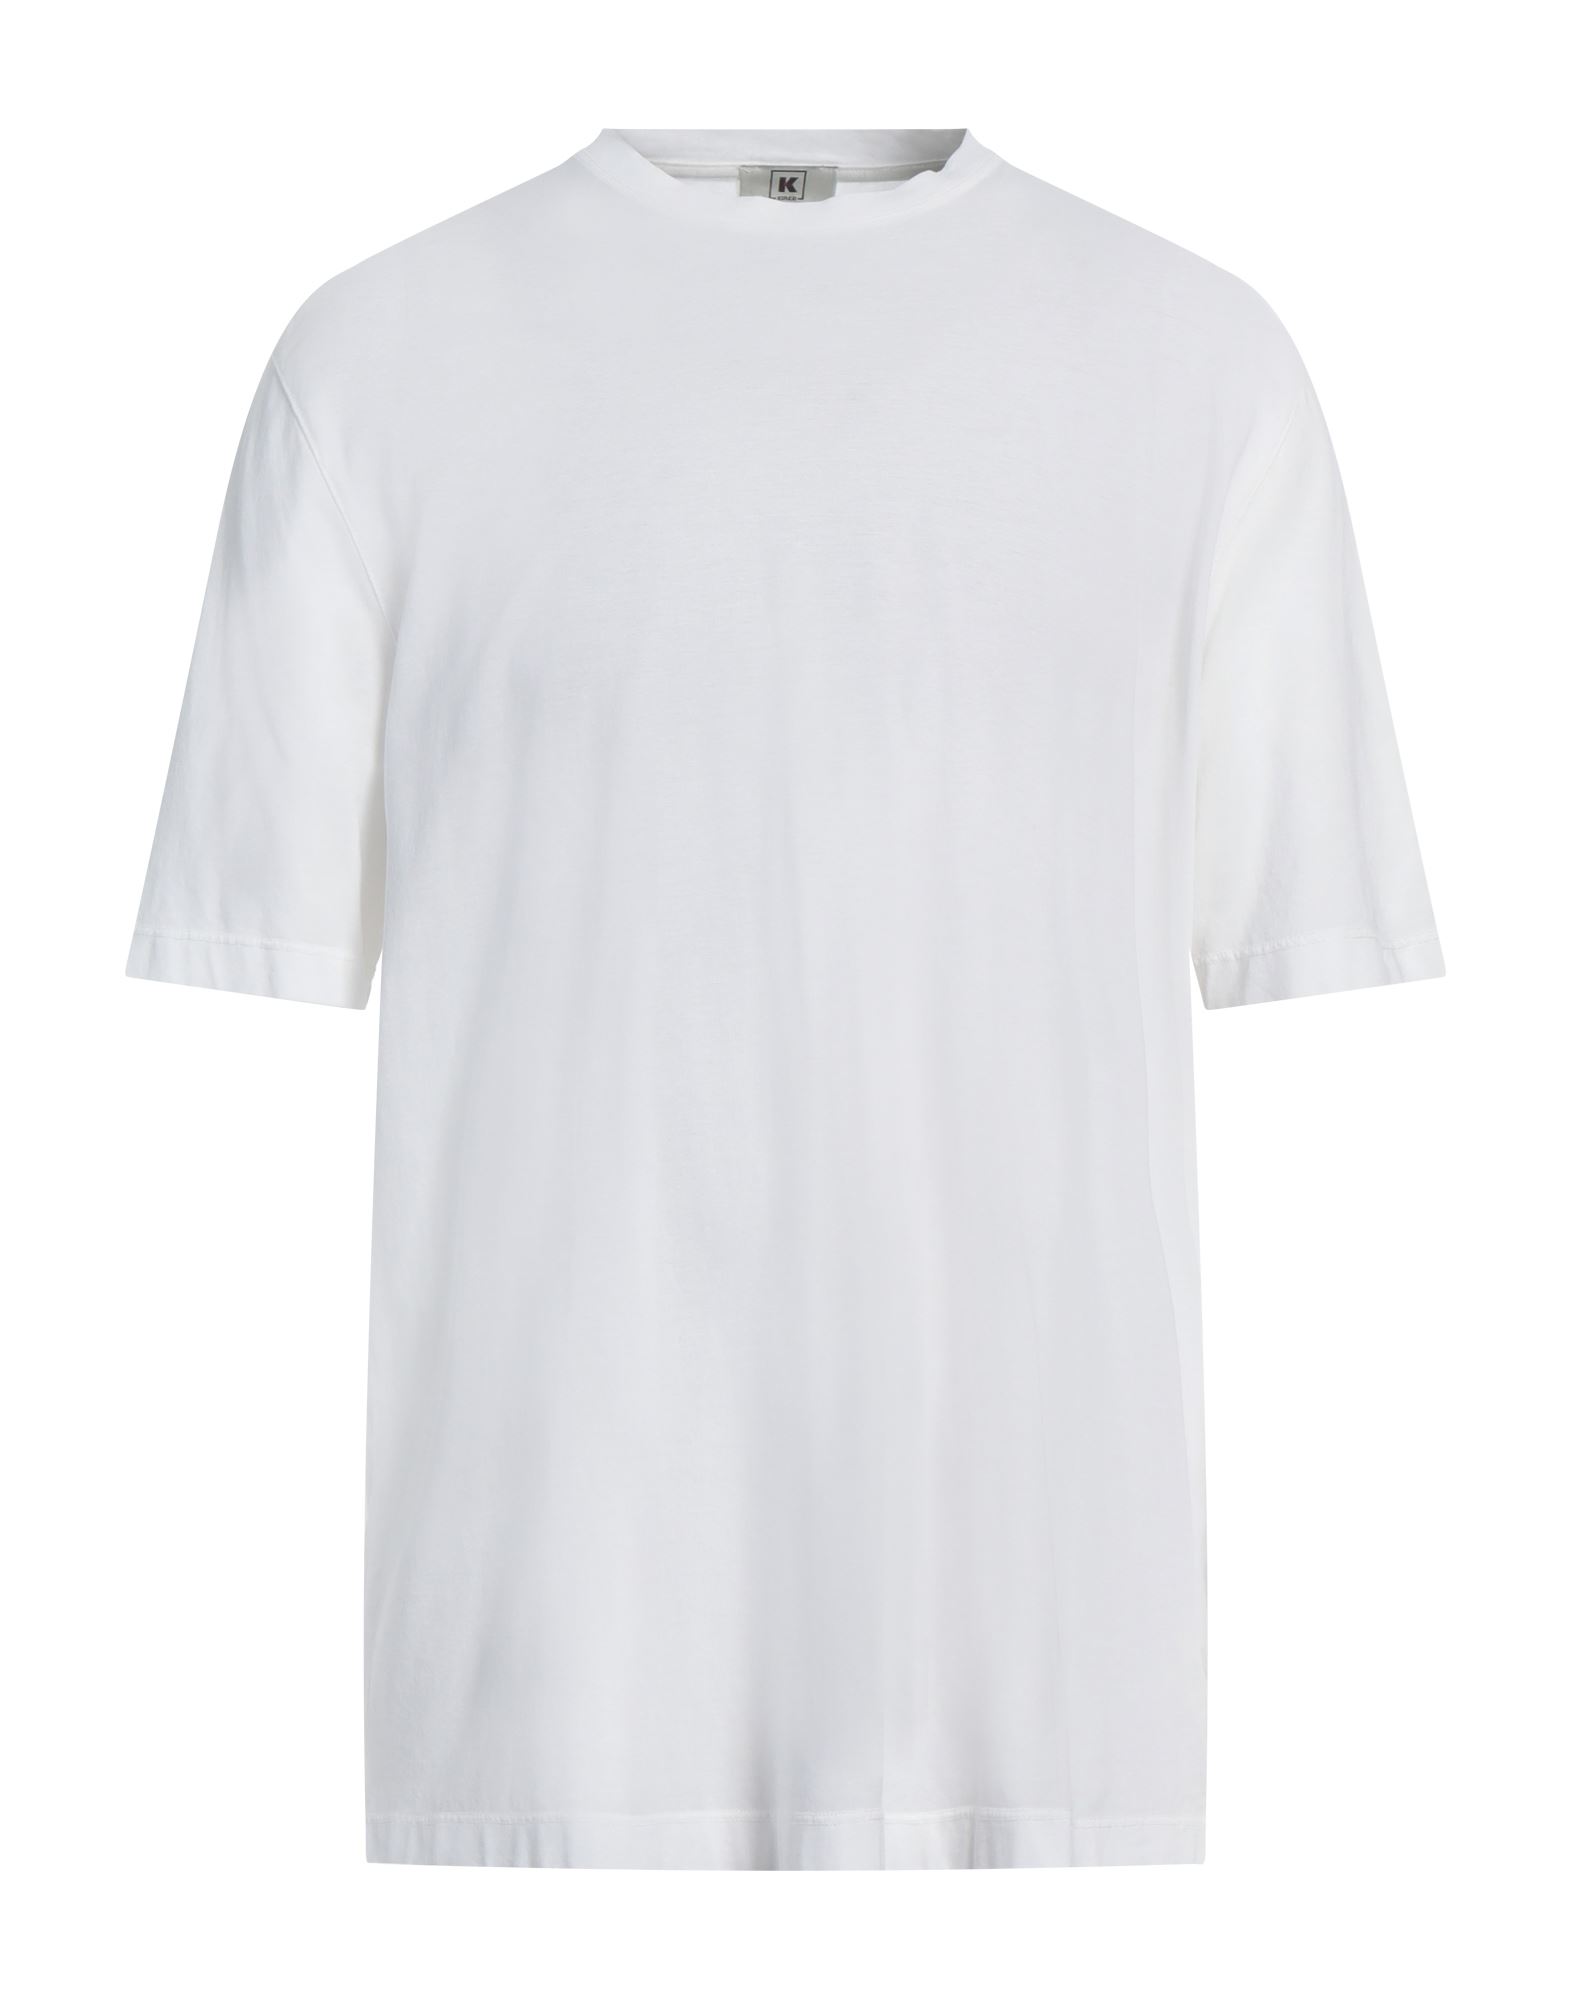 KIRED T-shirts Herren Weiß von KIRED